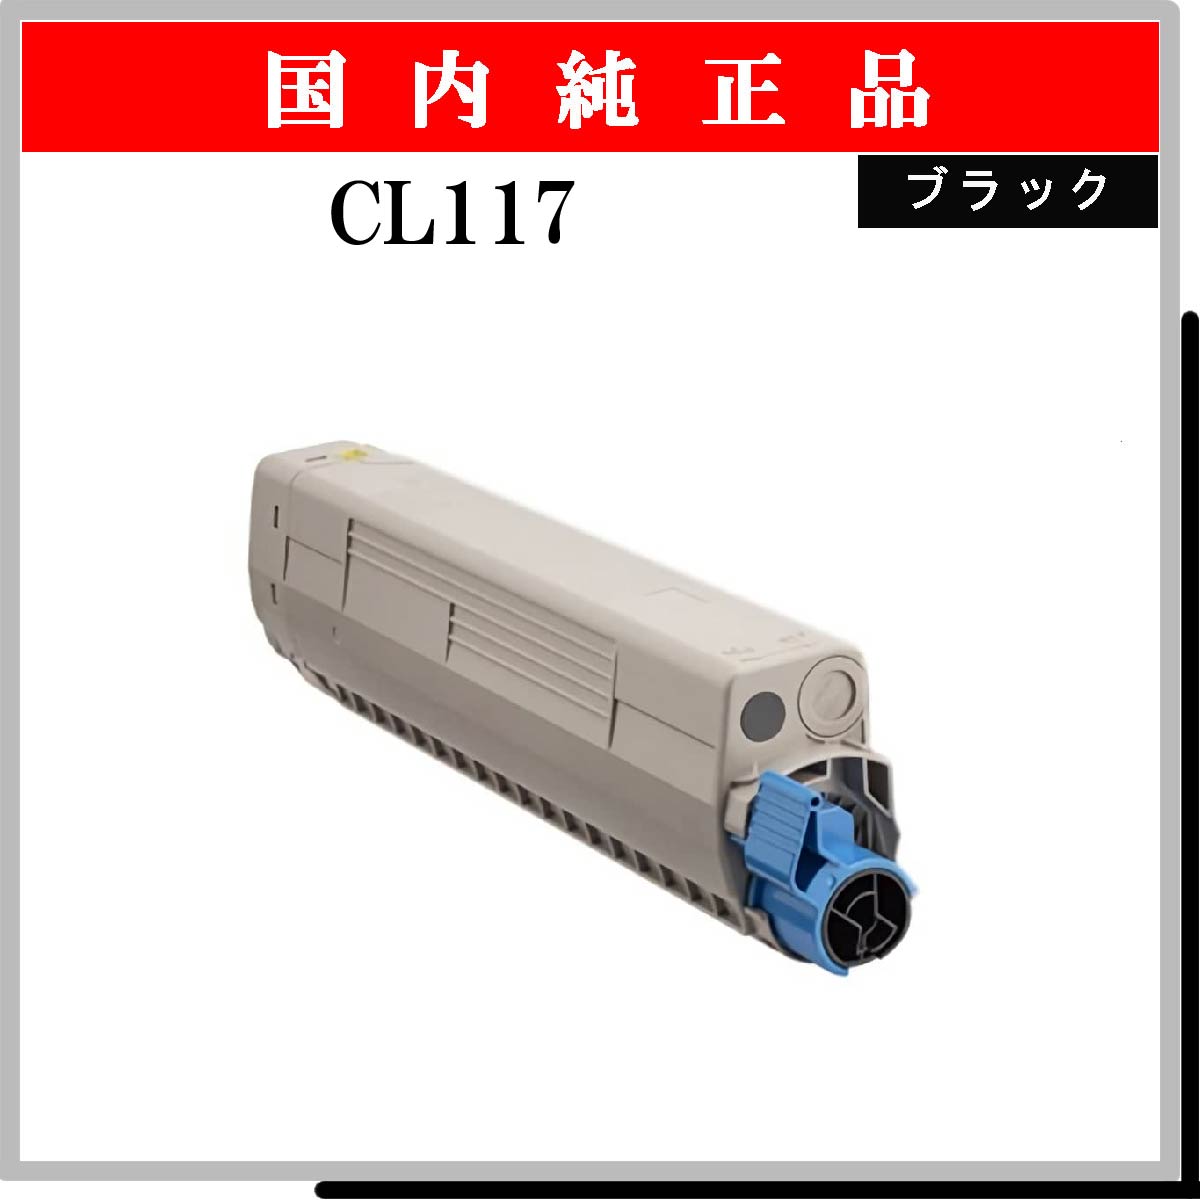 CL117 ﾌﾞﾗｯｸ 純正